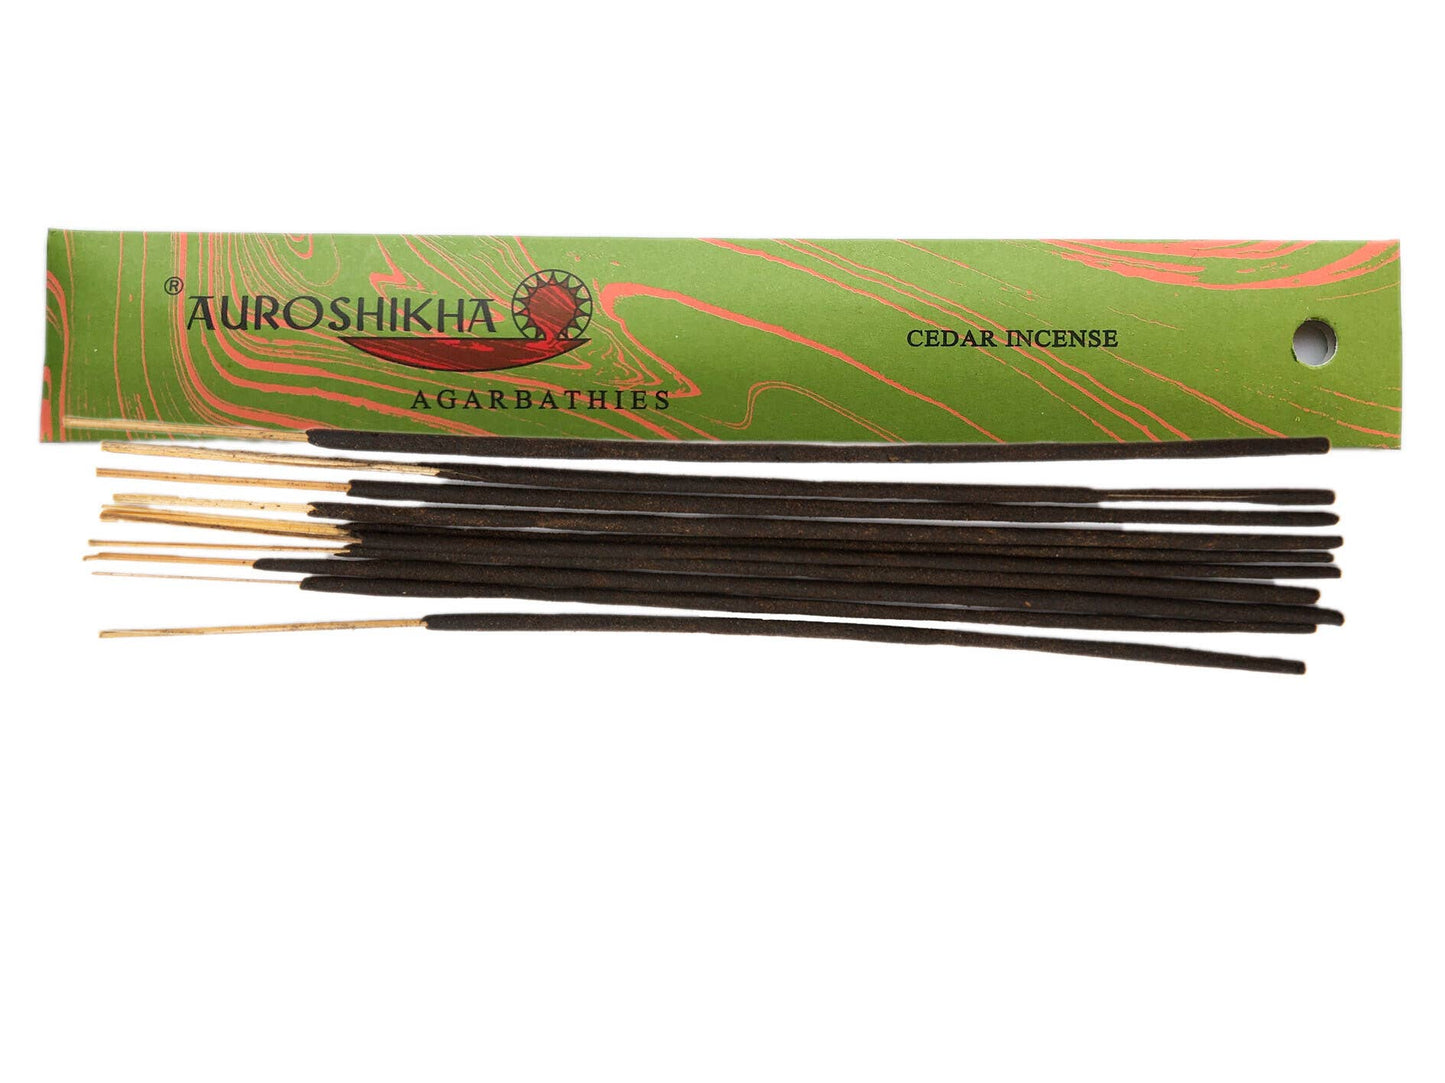 Auroshikha Cedar Incense Pack